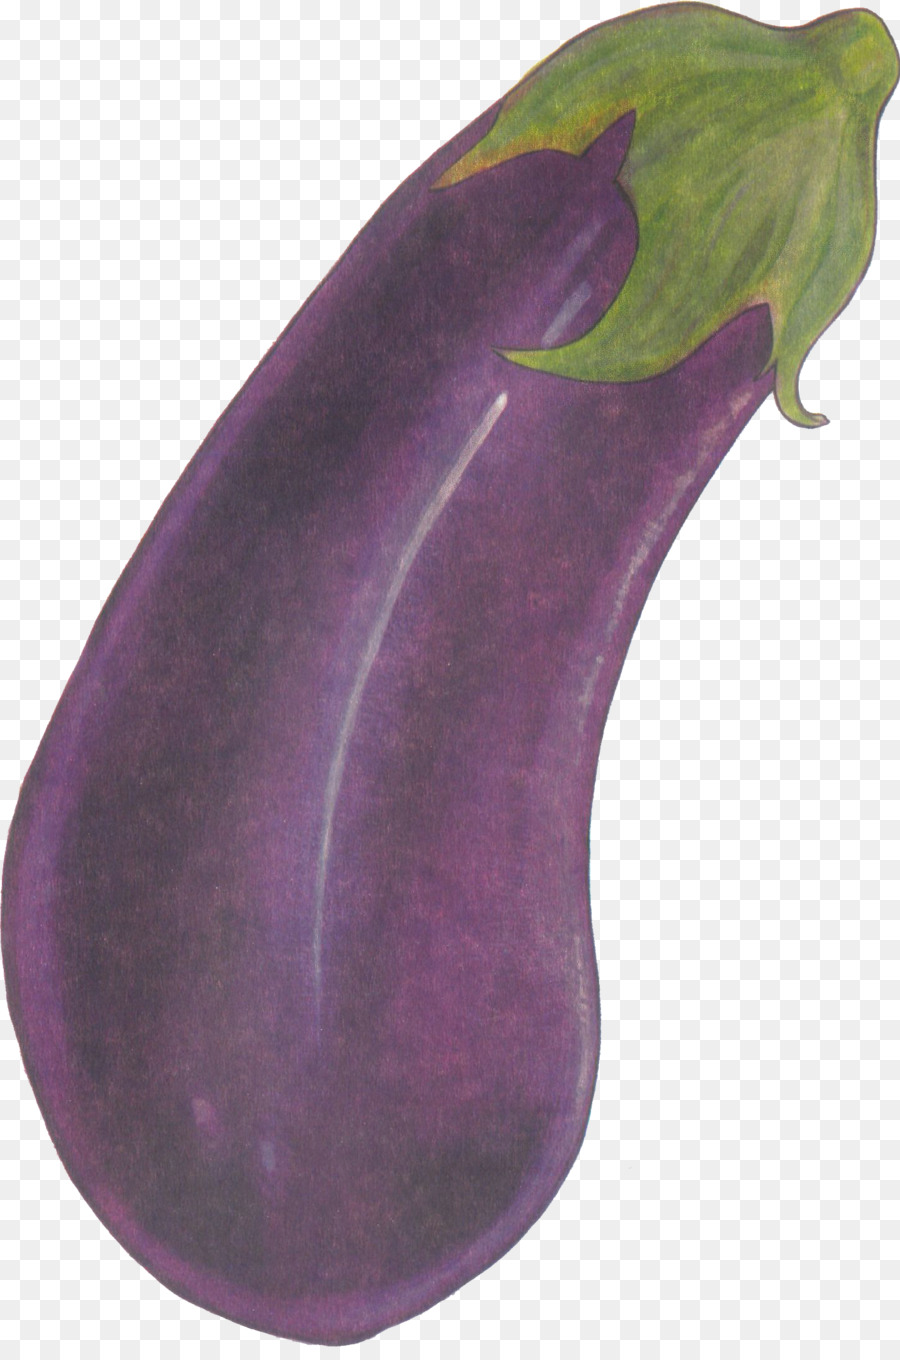 Eggplant Purple Health Love - eggplant png download - 1427*2135 - Free Transparent Eggplant png Download.